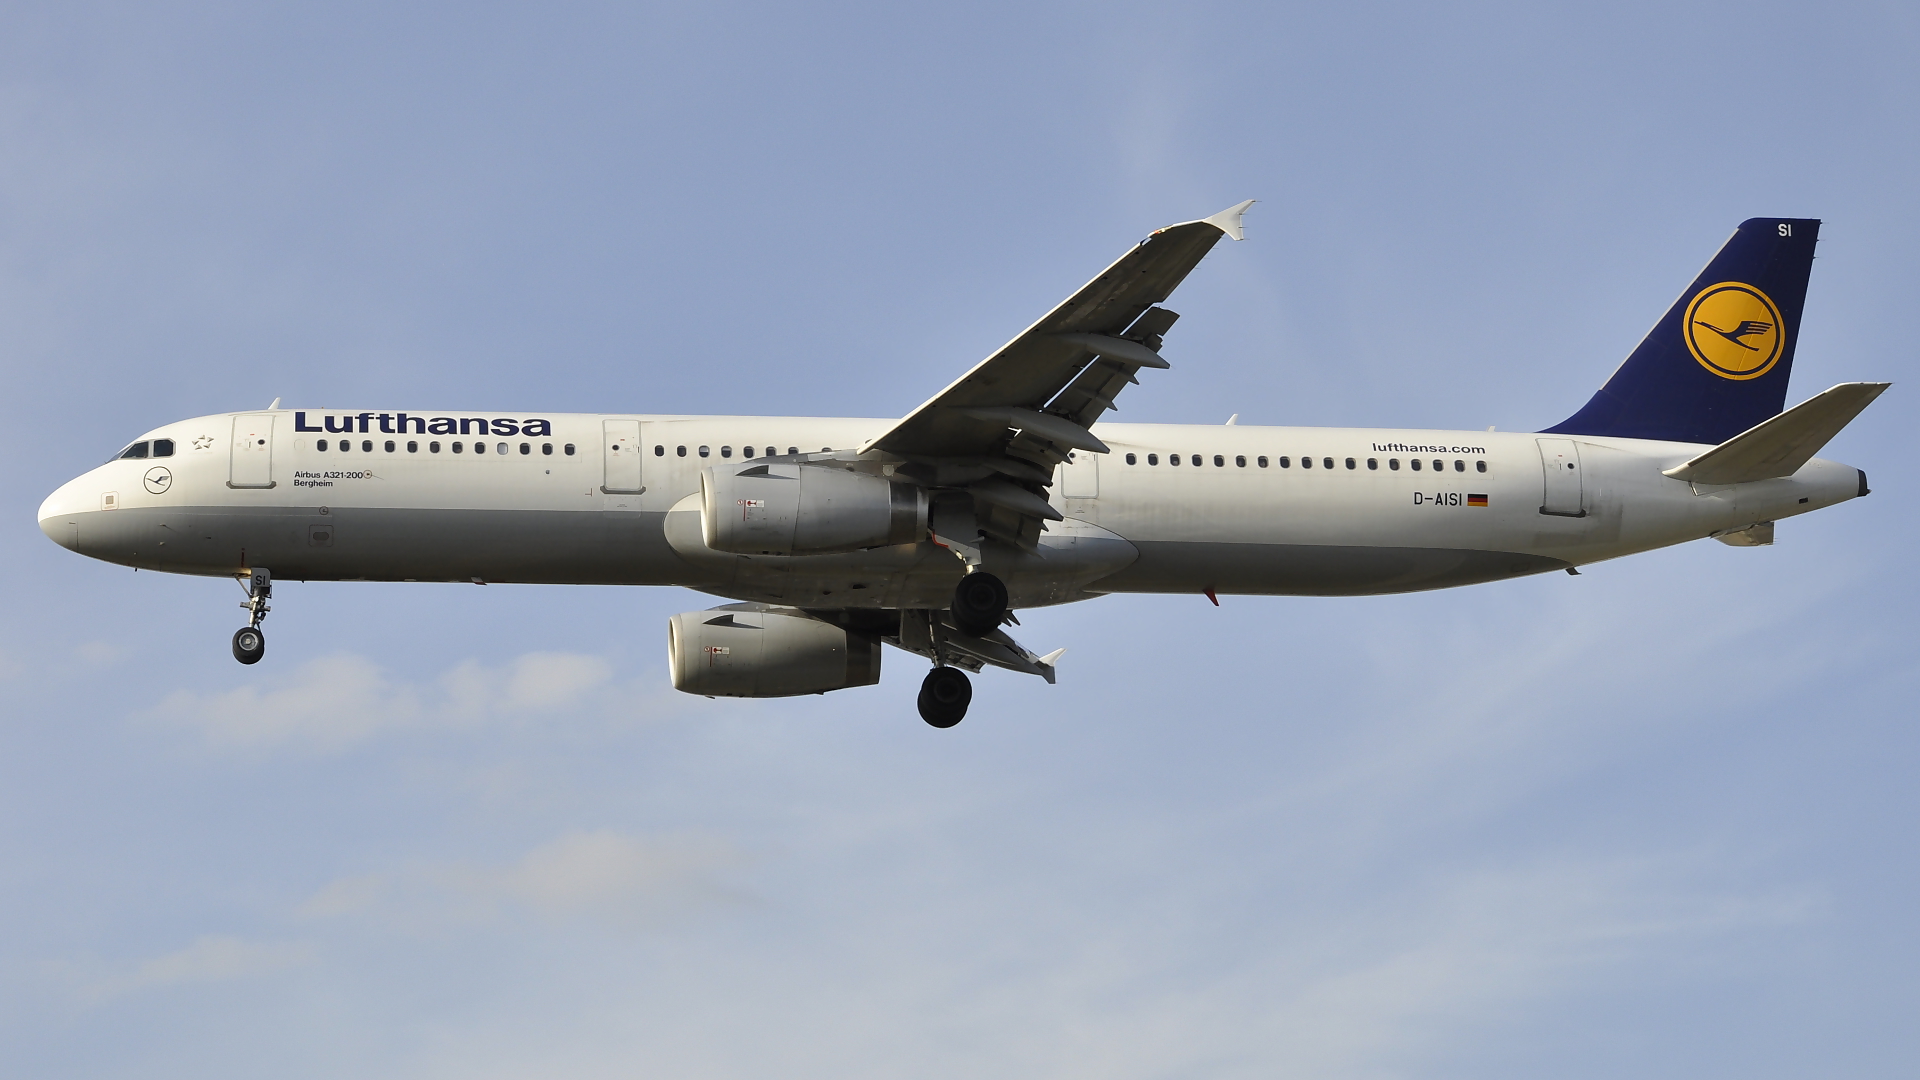 D-AISI ✈ Lufthansa Airbus 321-231 @ London-Heathrow